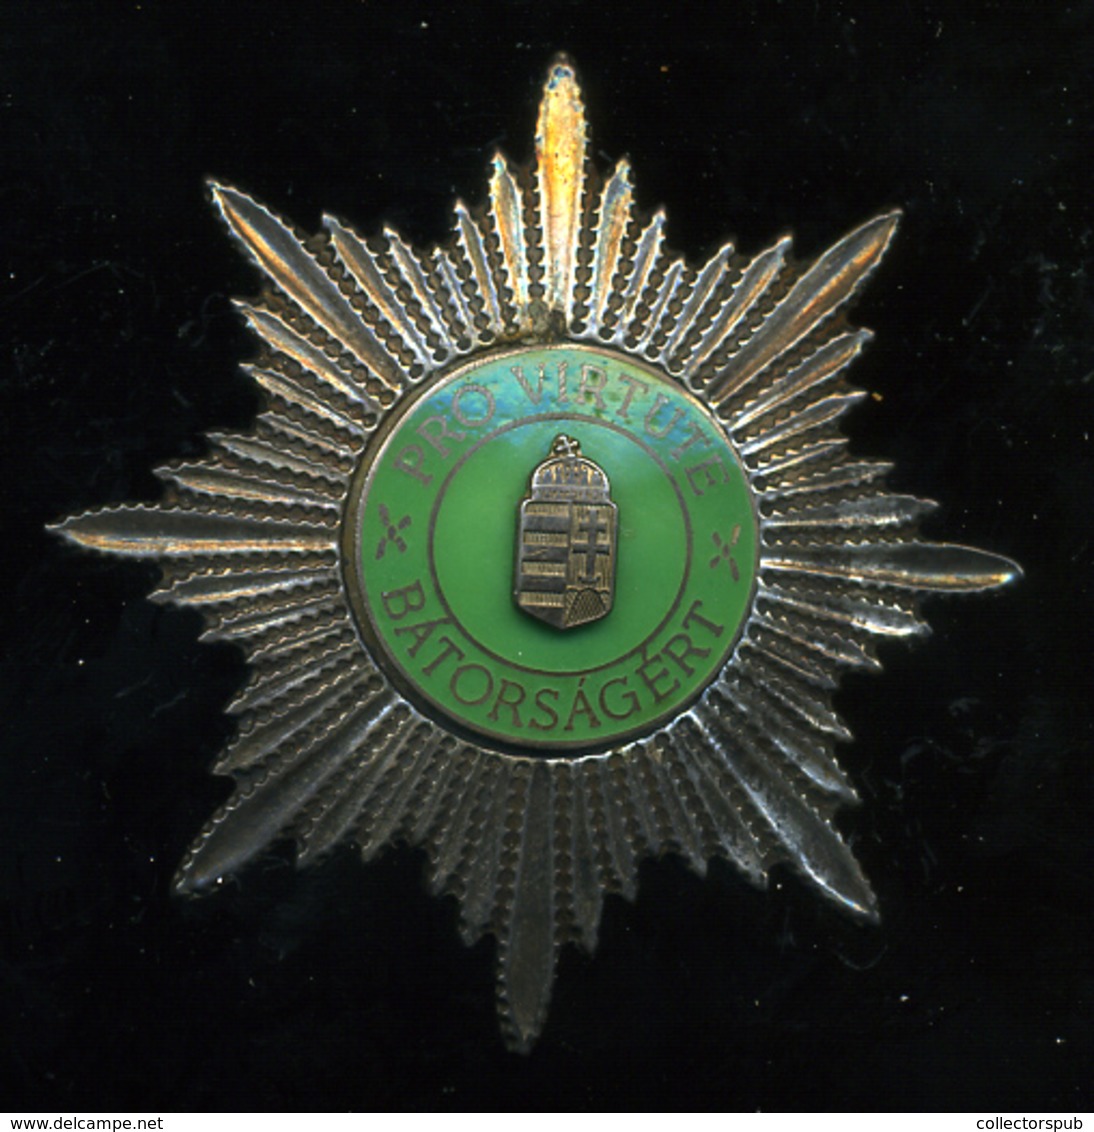 Bátorságért érdemjel (ezüst) - Armee